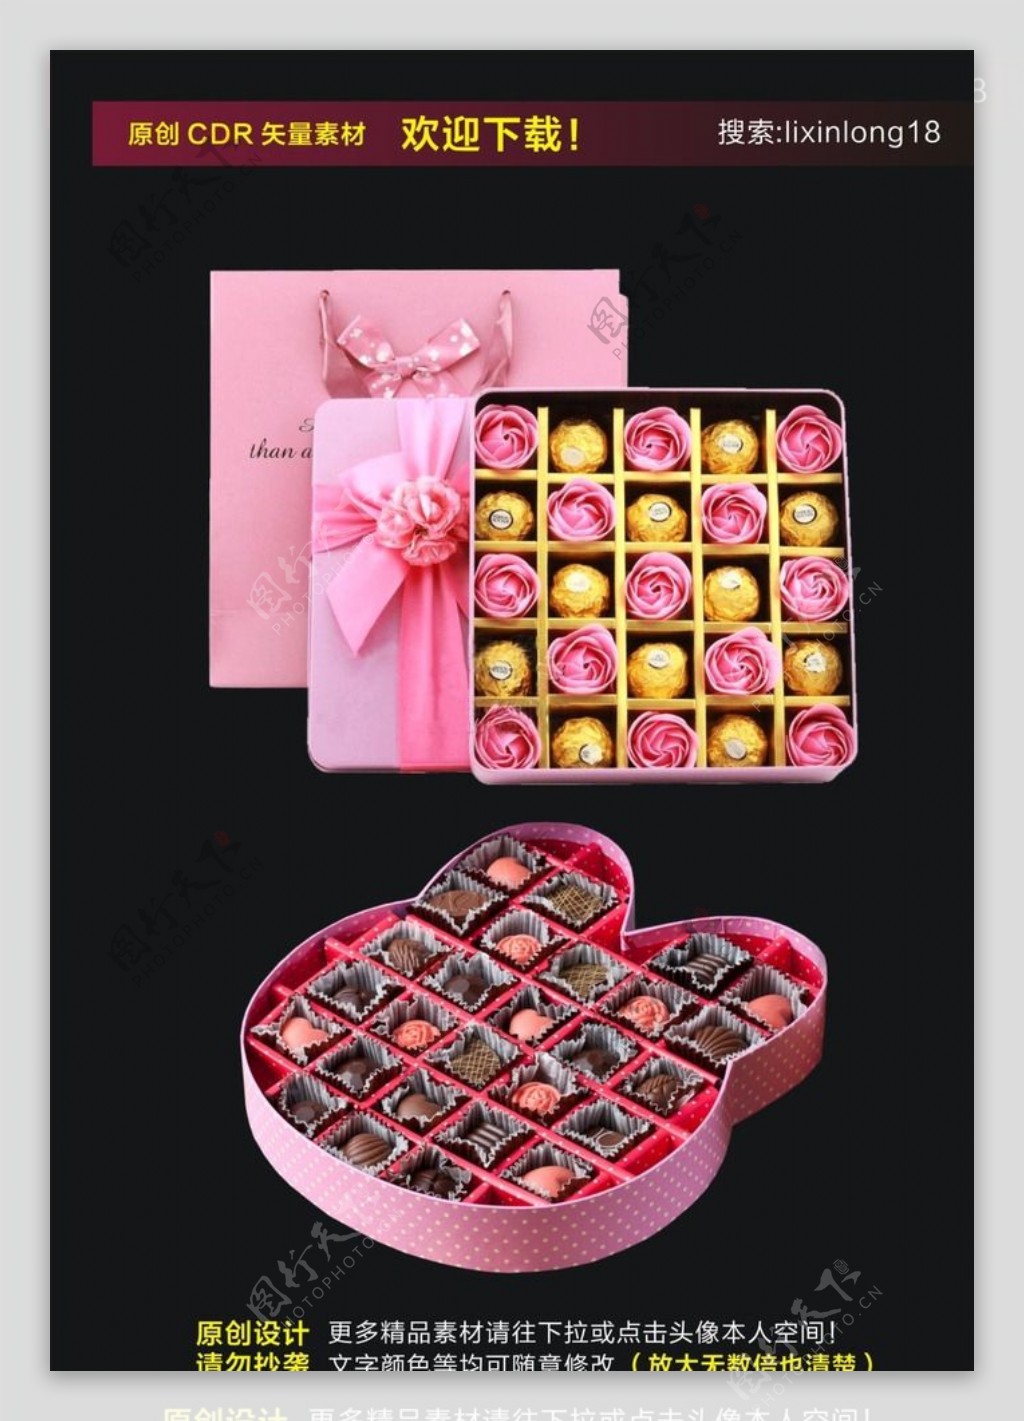 情人节生日礼物盒图片